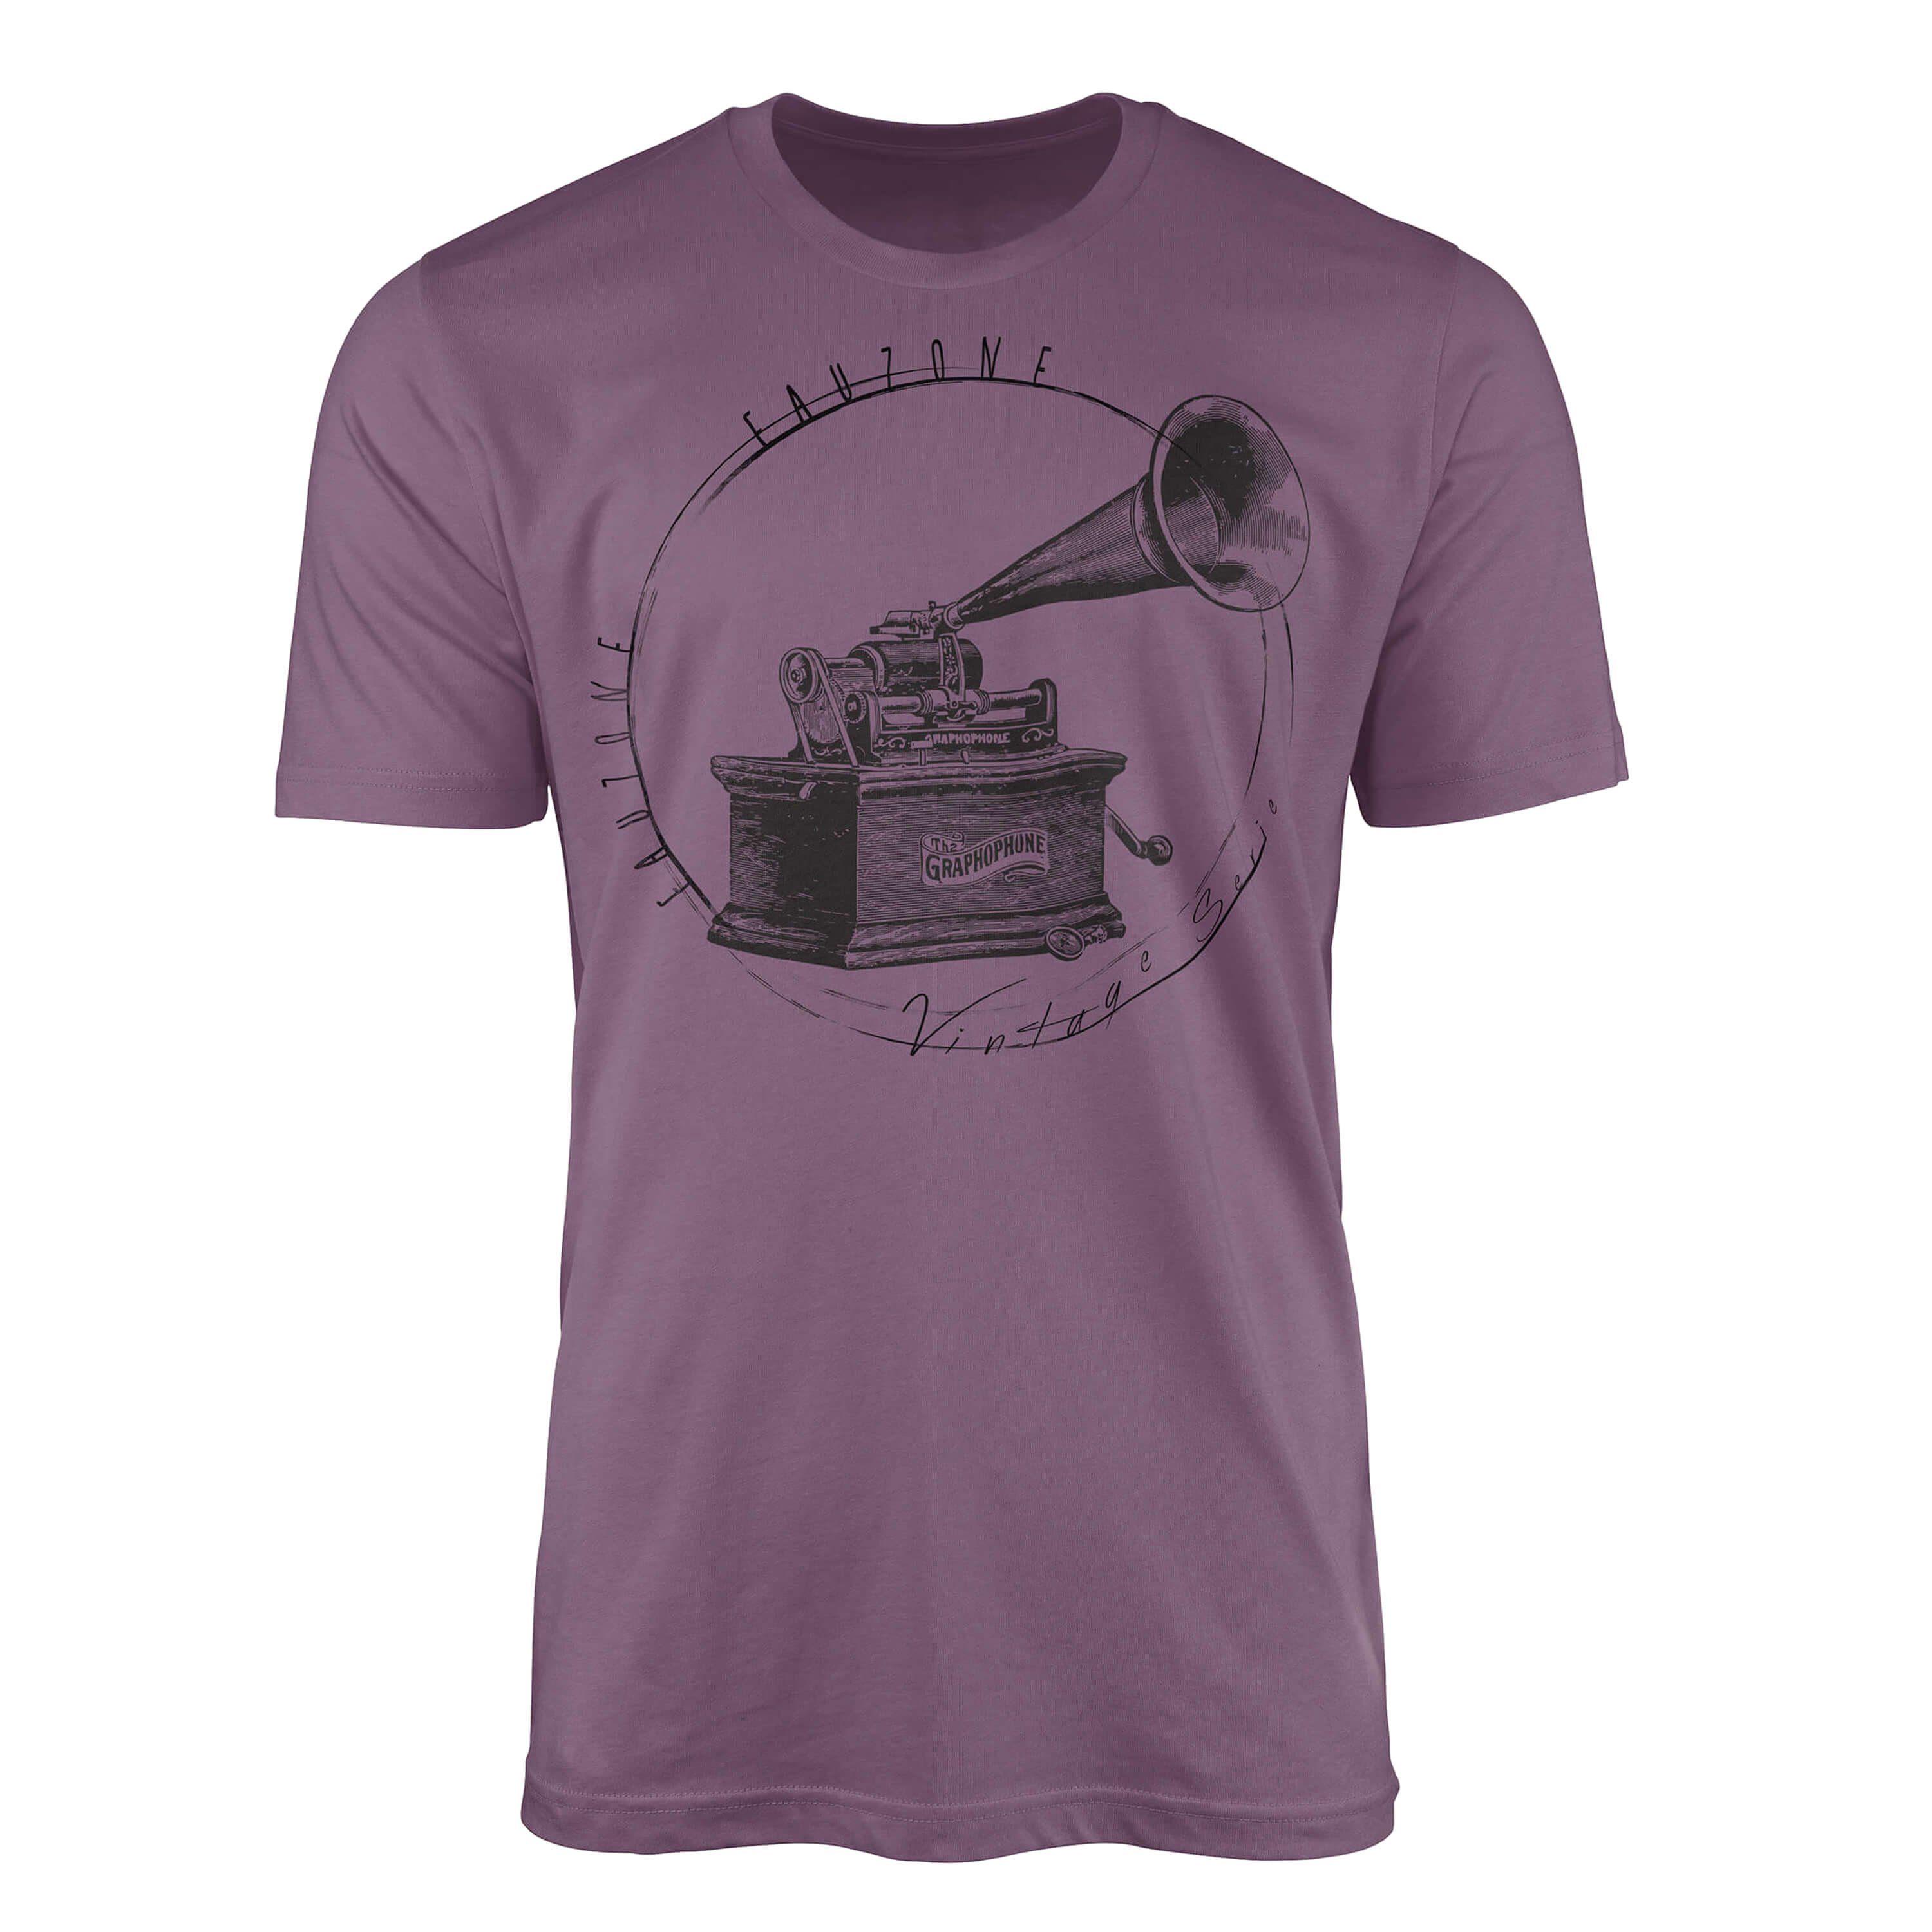 Sinus Art T-Shirt Vintage Herren T-Shirt Grammophon Shiraz